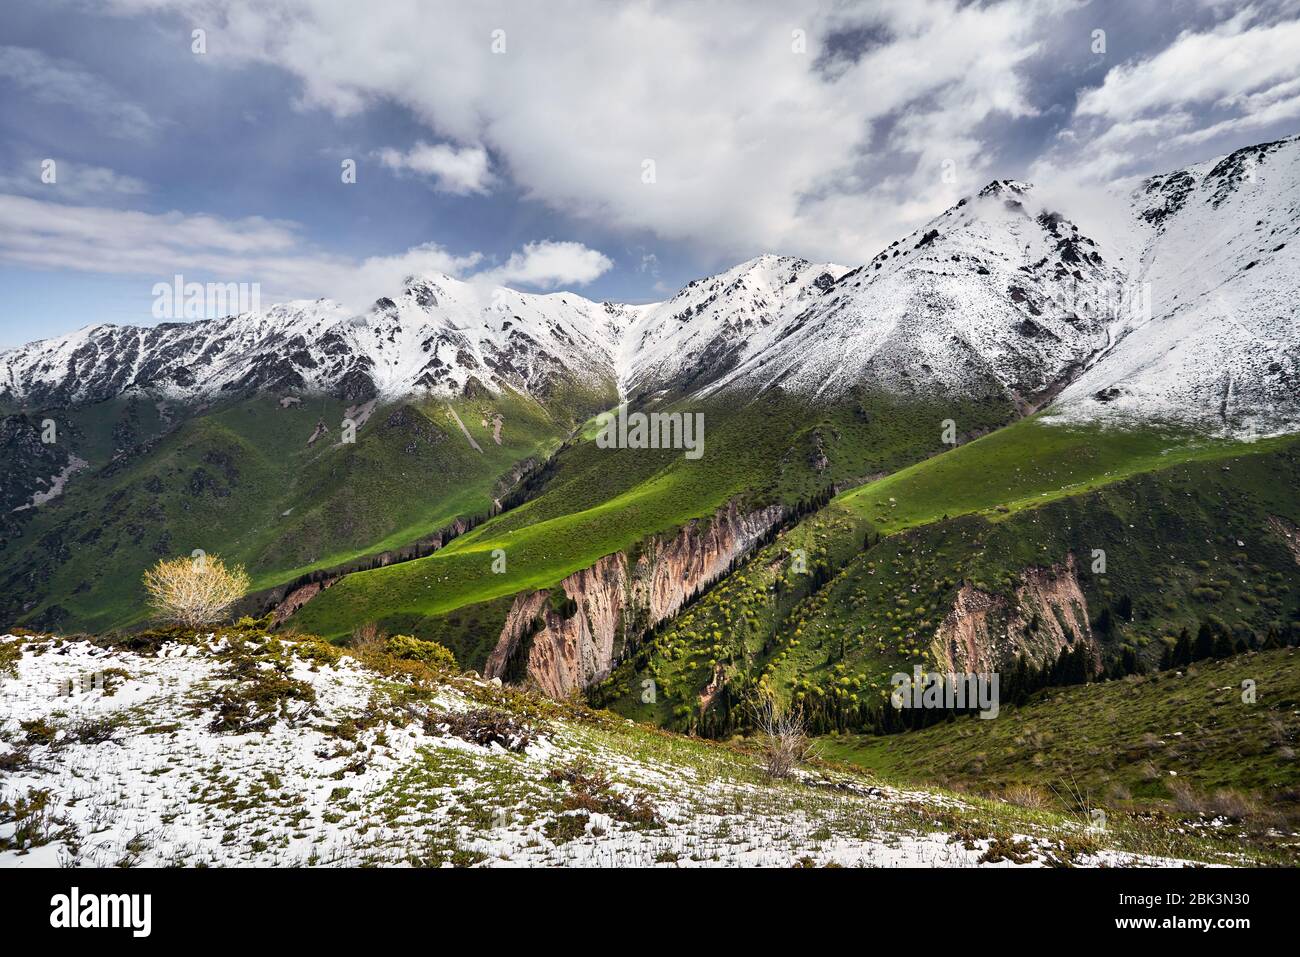 El pico de la montaña con nieve y bosque verde contra el azul cielo nublado Foto de stock